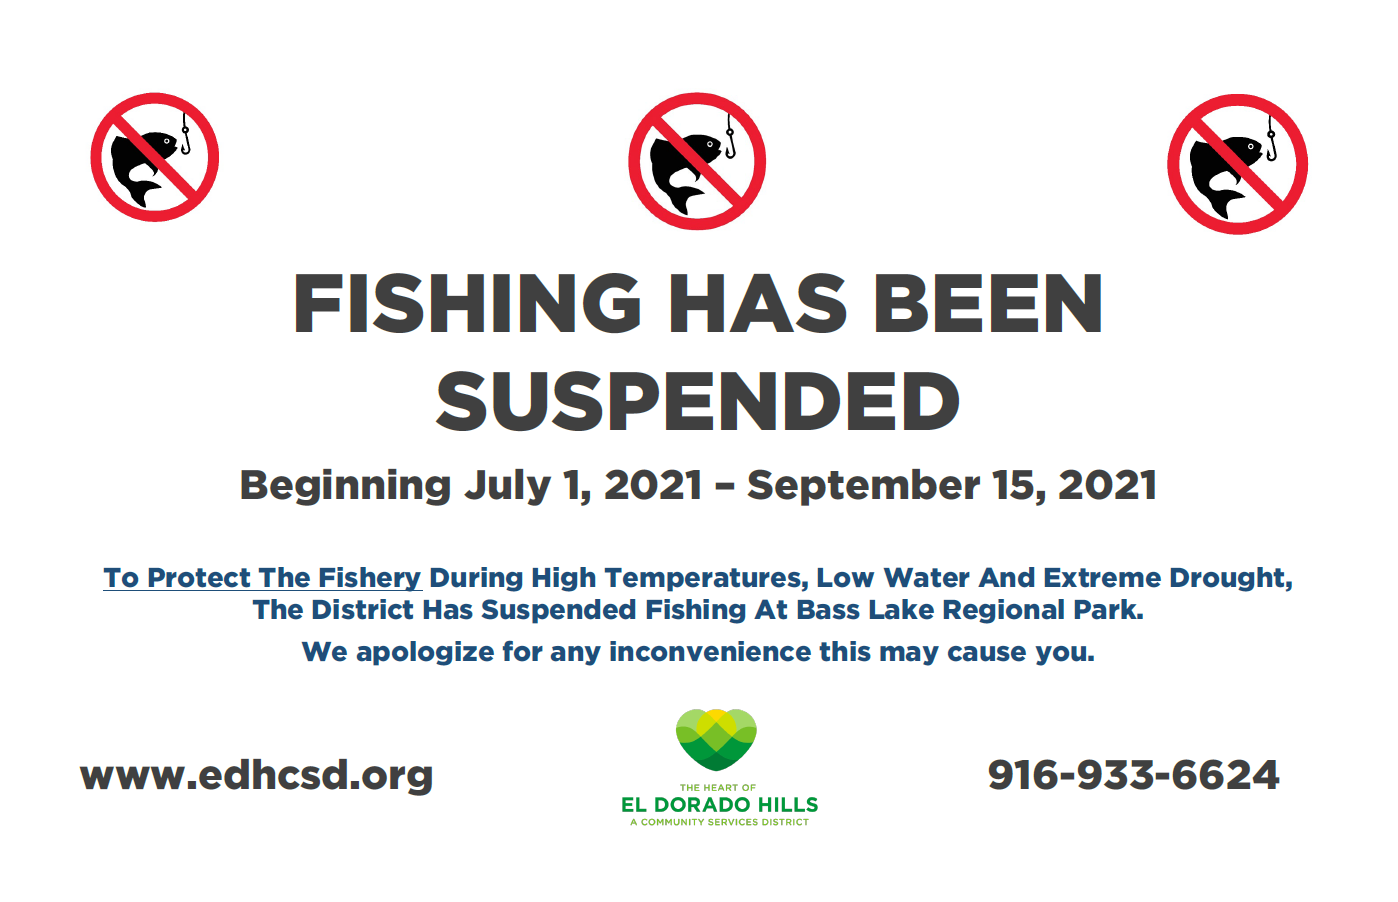 Fishing Suspension at BLRP